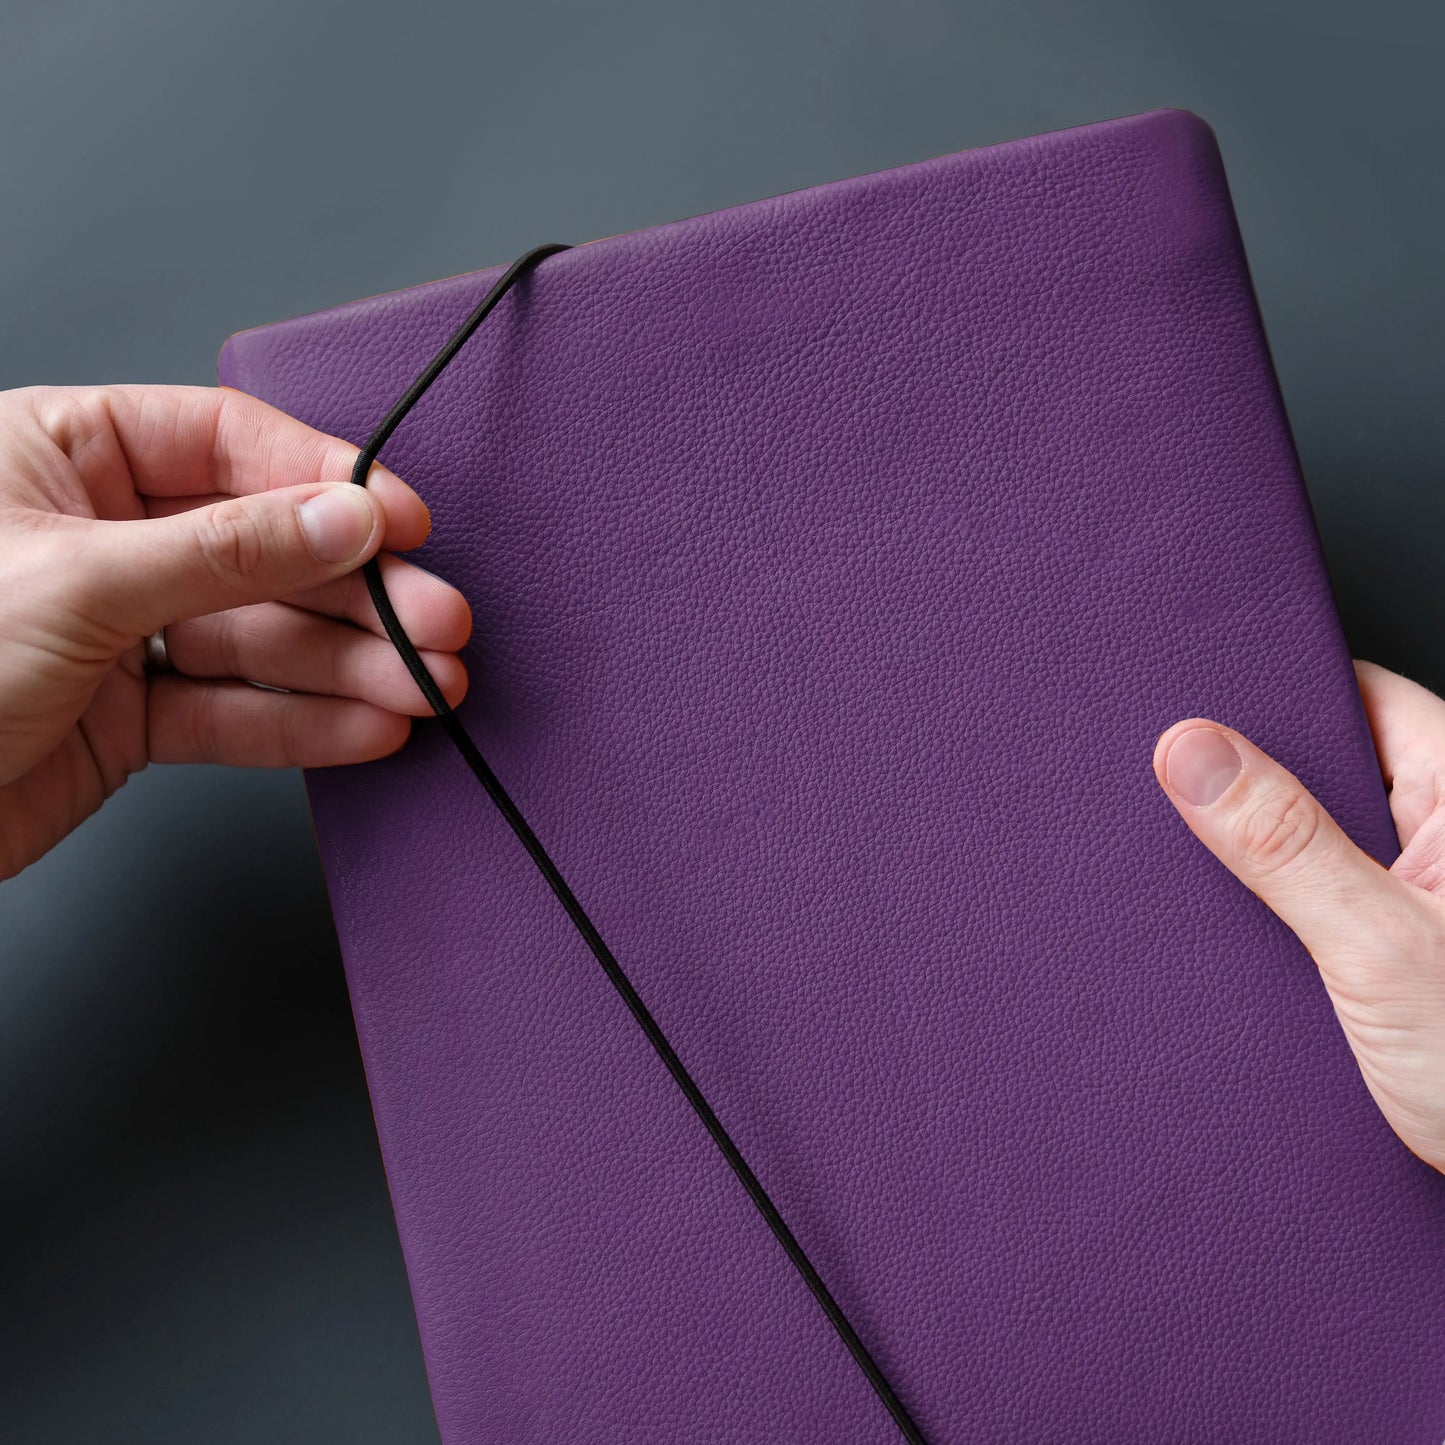 lilafarbenes Tabletcase aus Leder, das von zwei Händen mit dem Verschlussgummi geschlossen wird.